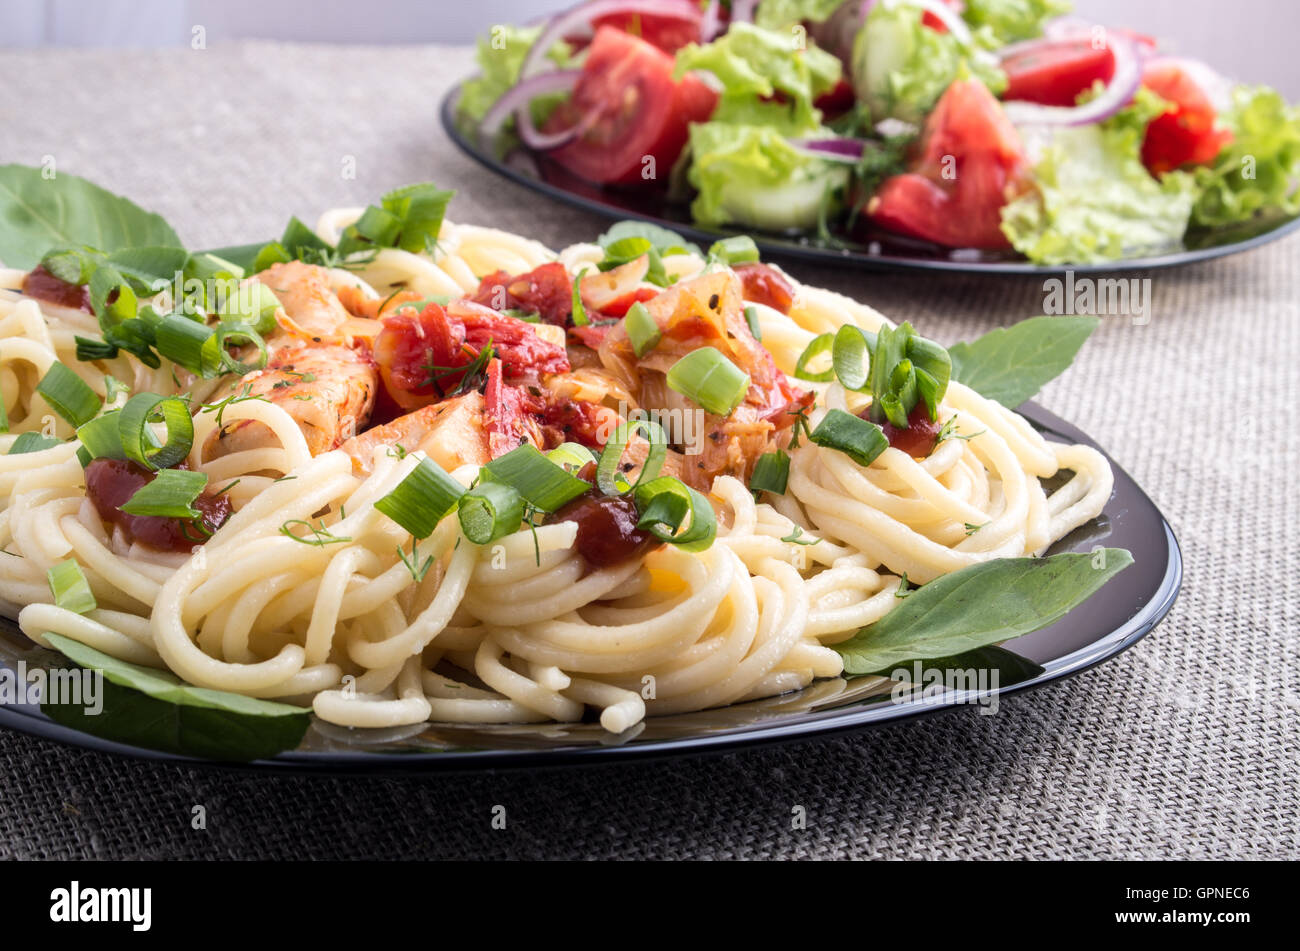 Des repas faits maison sur un tapis gris - spaghetti avec des morceaux de poulet et de légumes à l'étuvée avec salade de tomate et laitue Banque D'Images